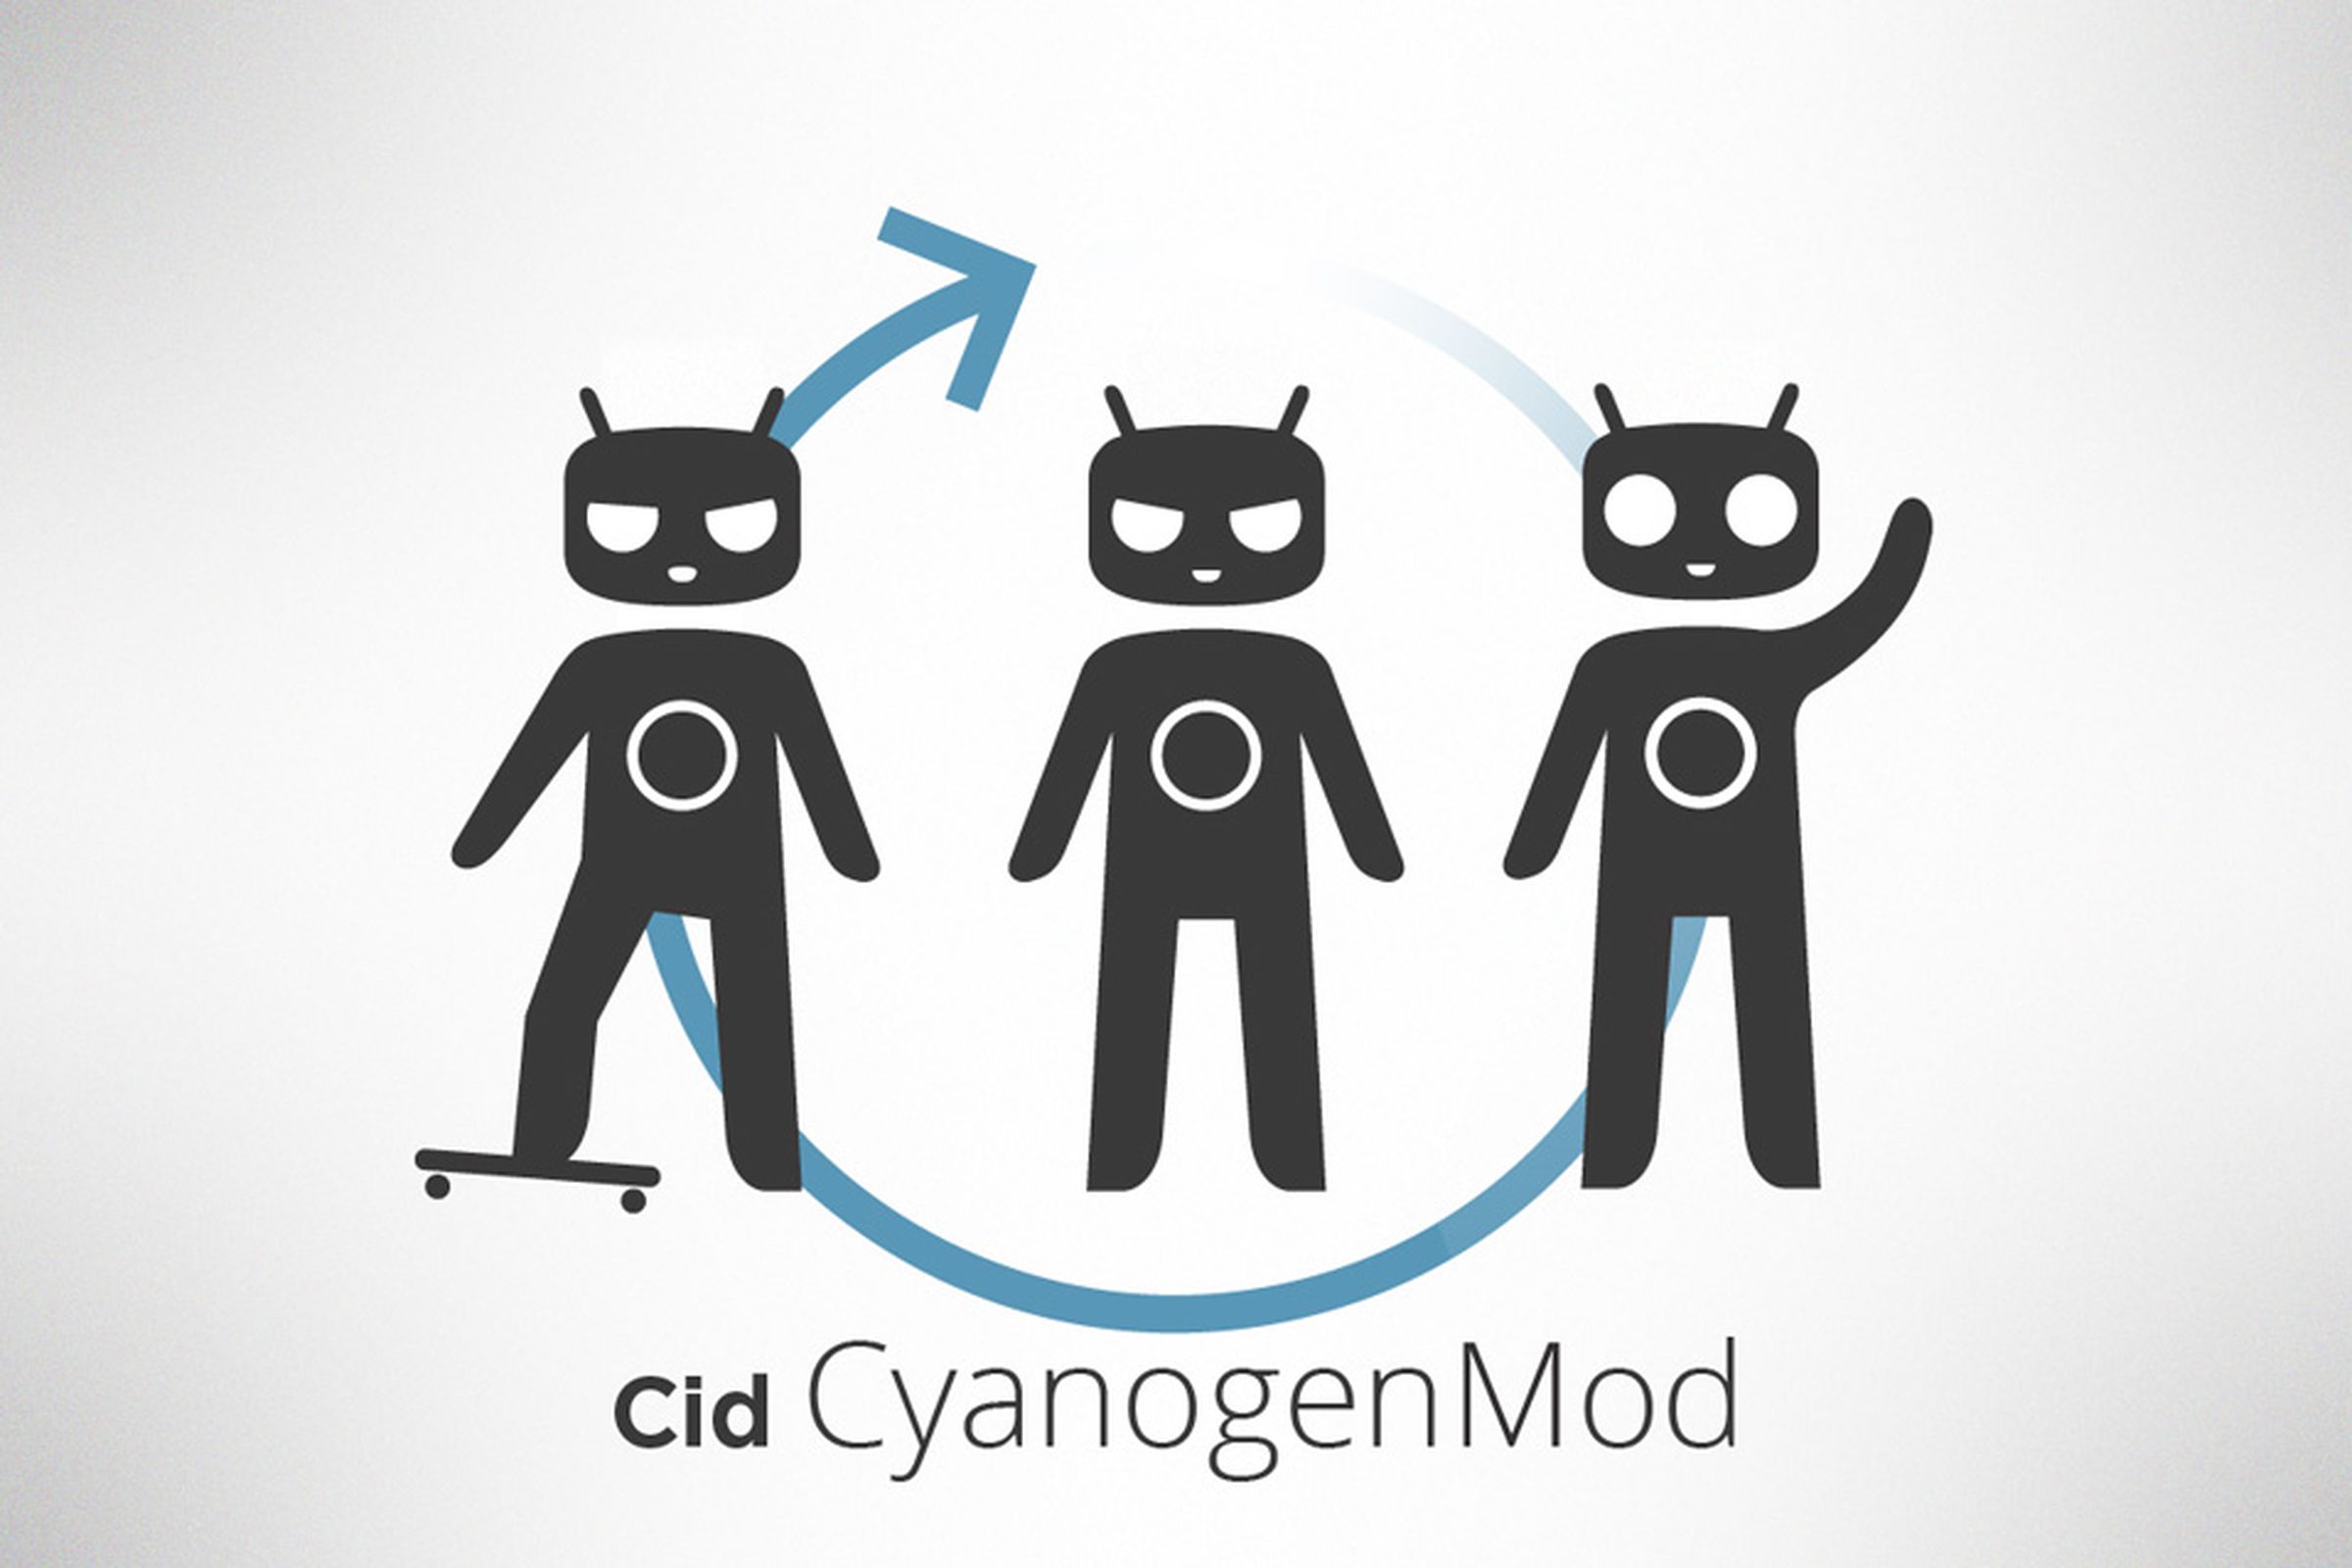 Cyanogen mod new logo